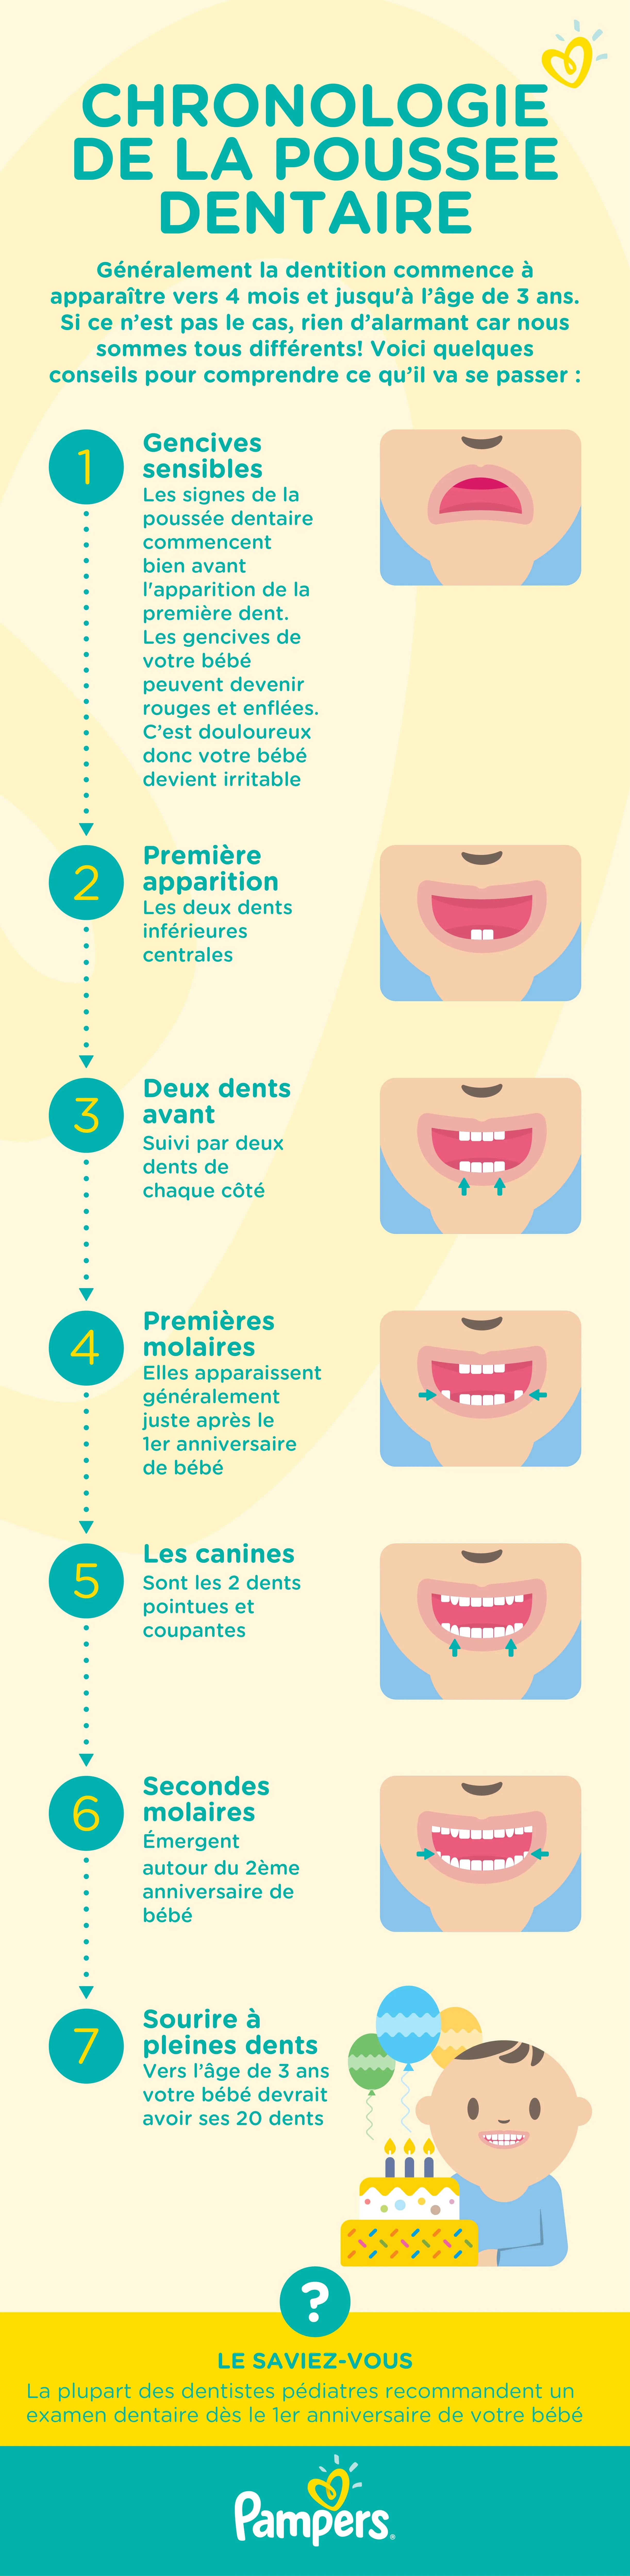 B9-chronologie-de-la-poussee-dentaire-infographic-min